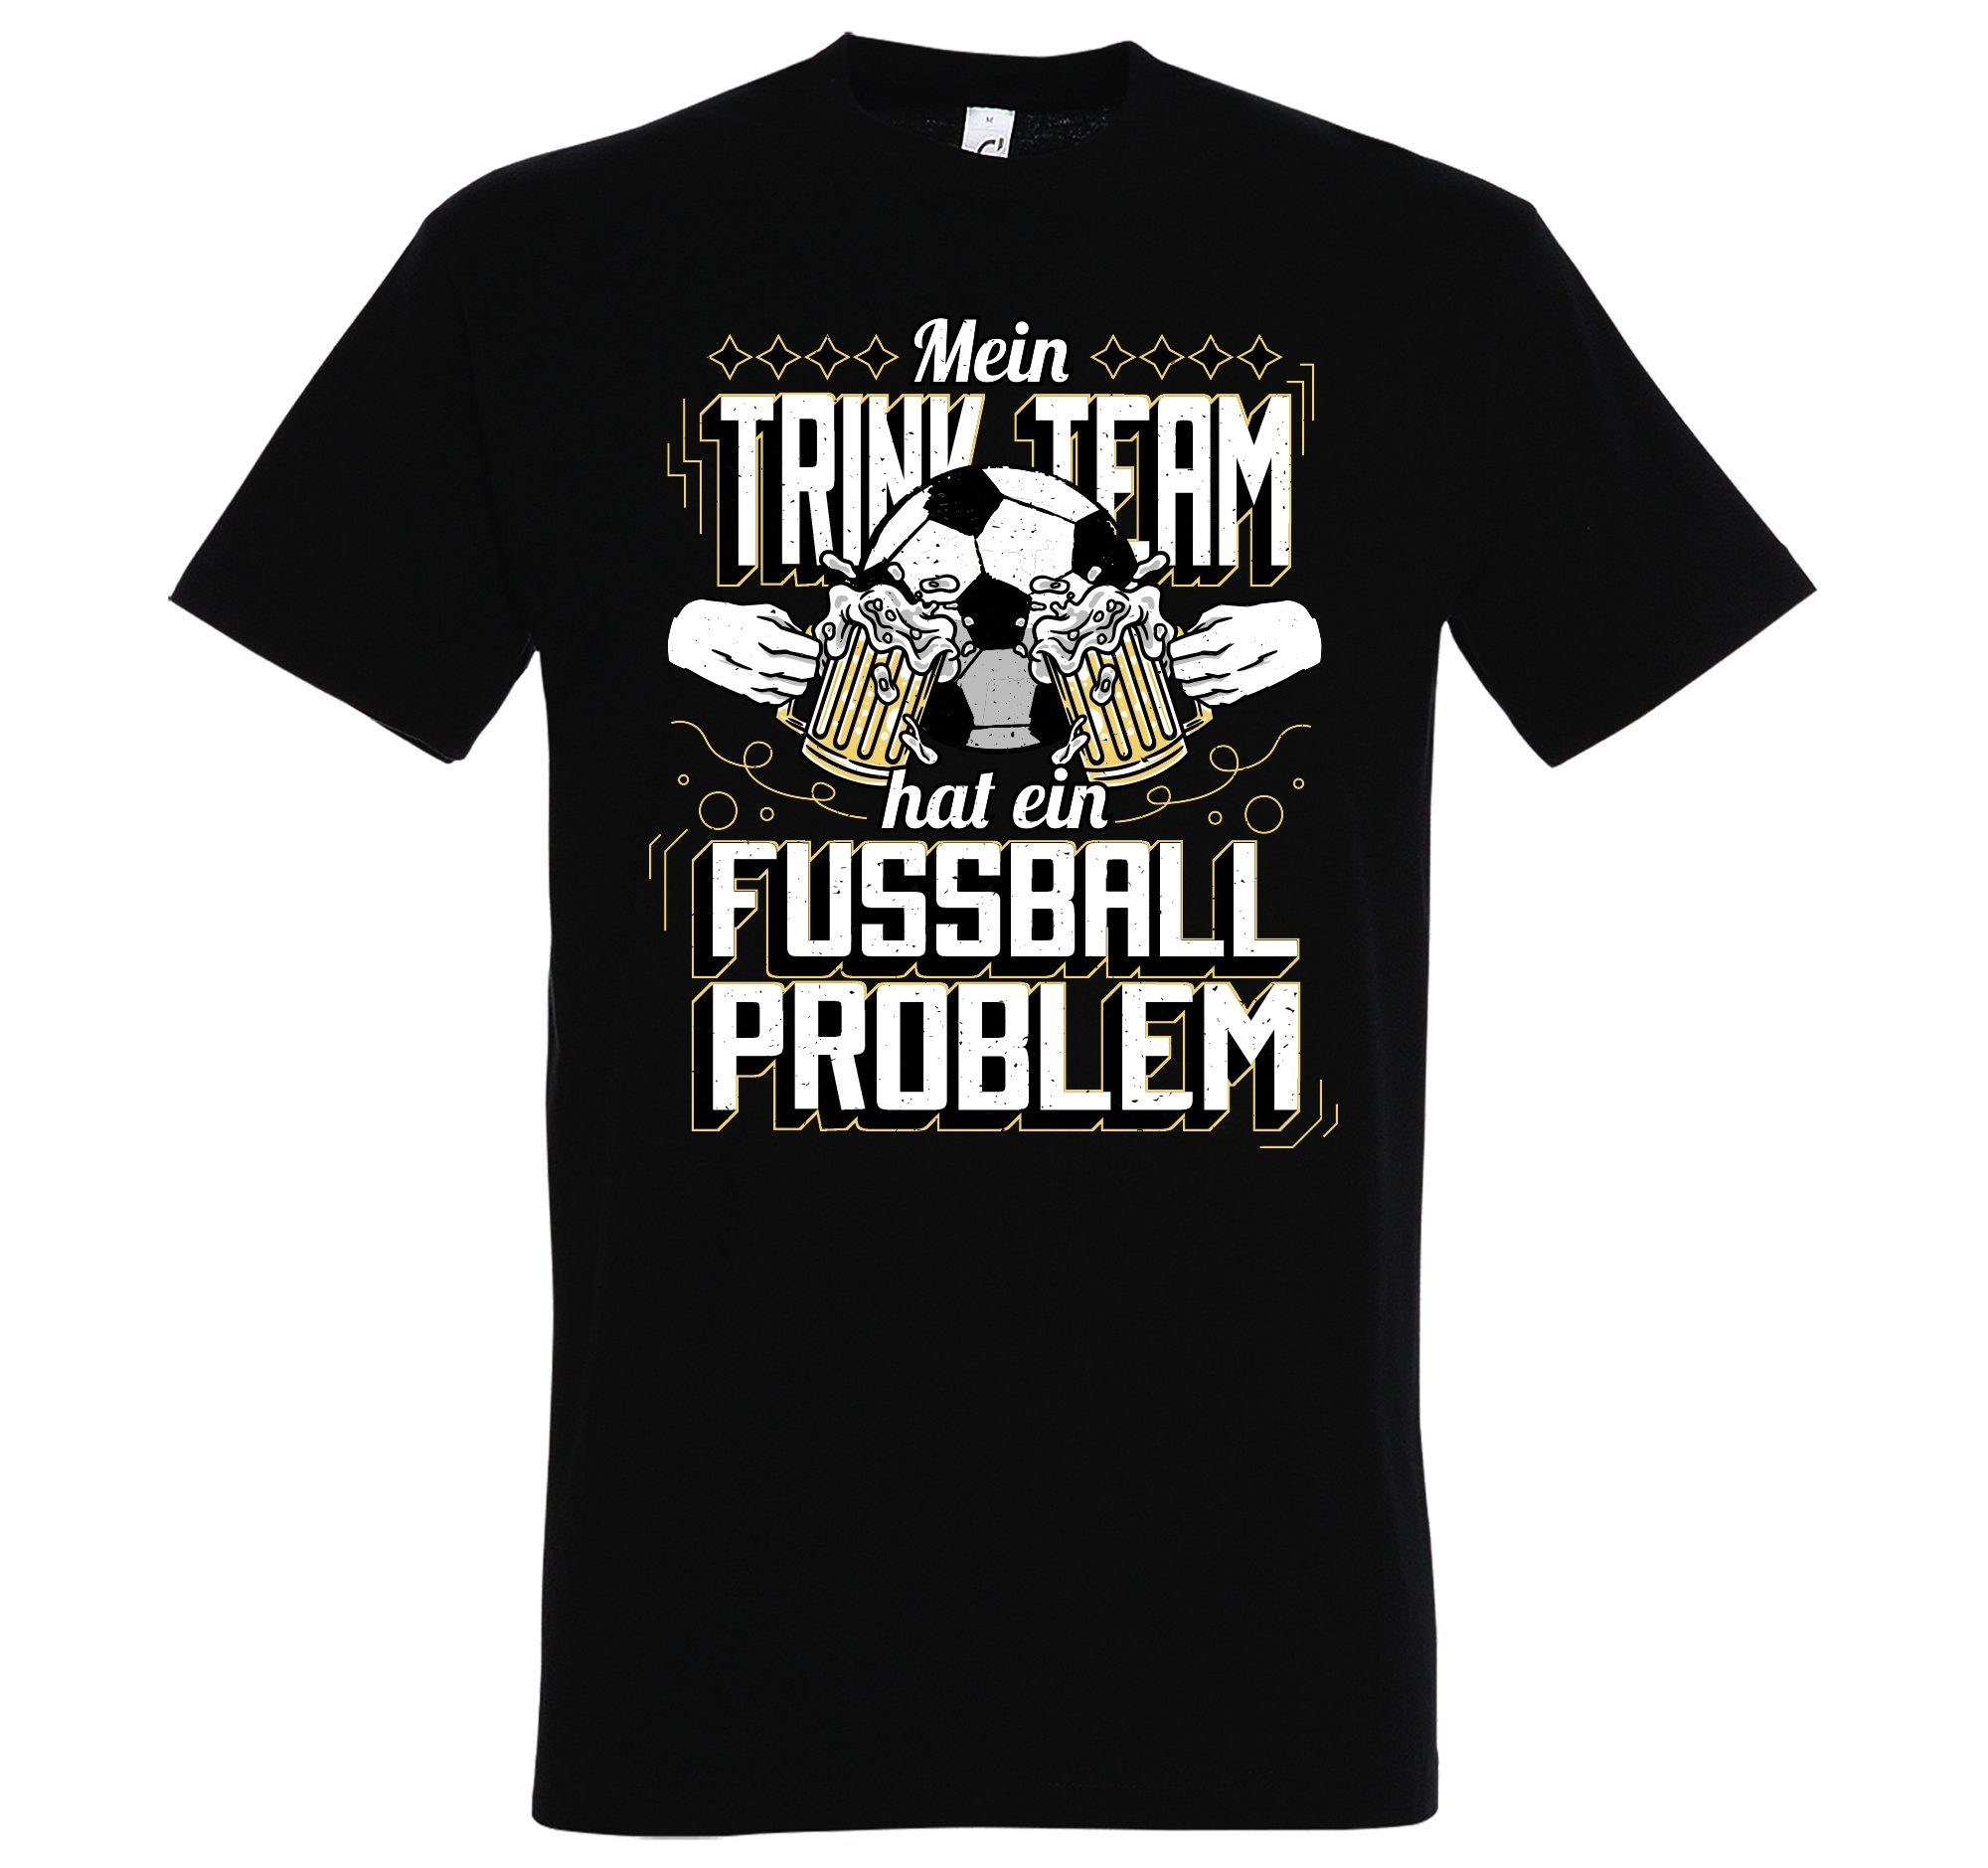 Herren "Mein trendigem Designz Shirt Problem" Frontprint mit T-Shirt Fußball Trinkteam Hat Schwarz Ein Youth